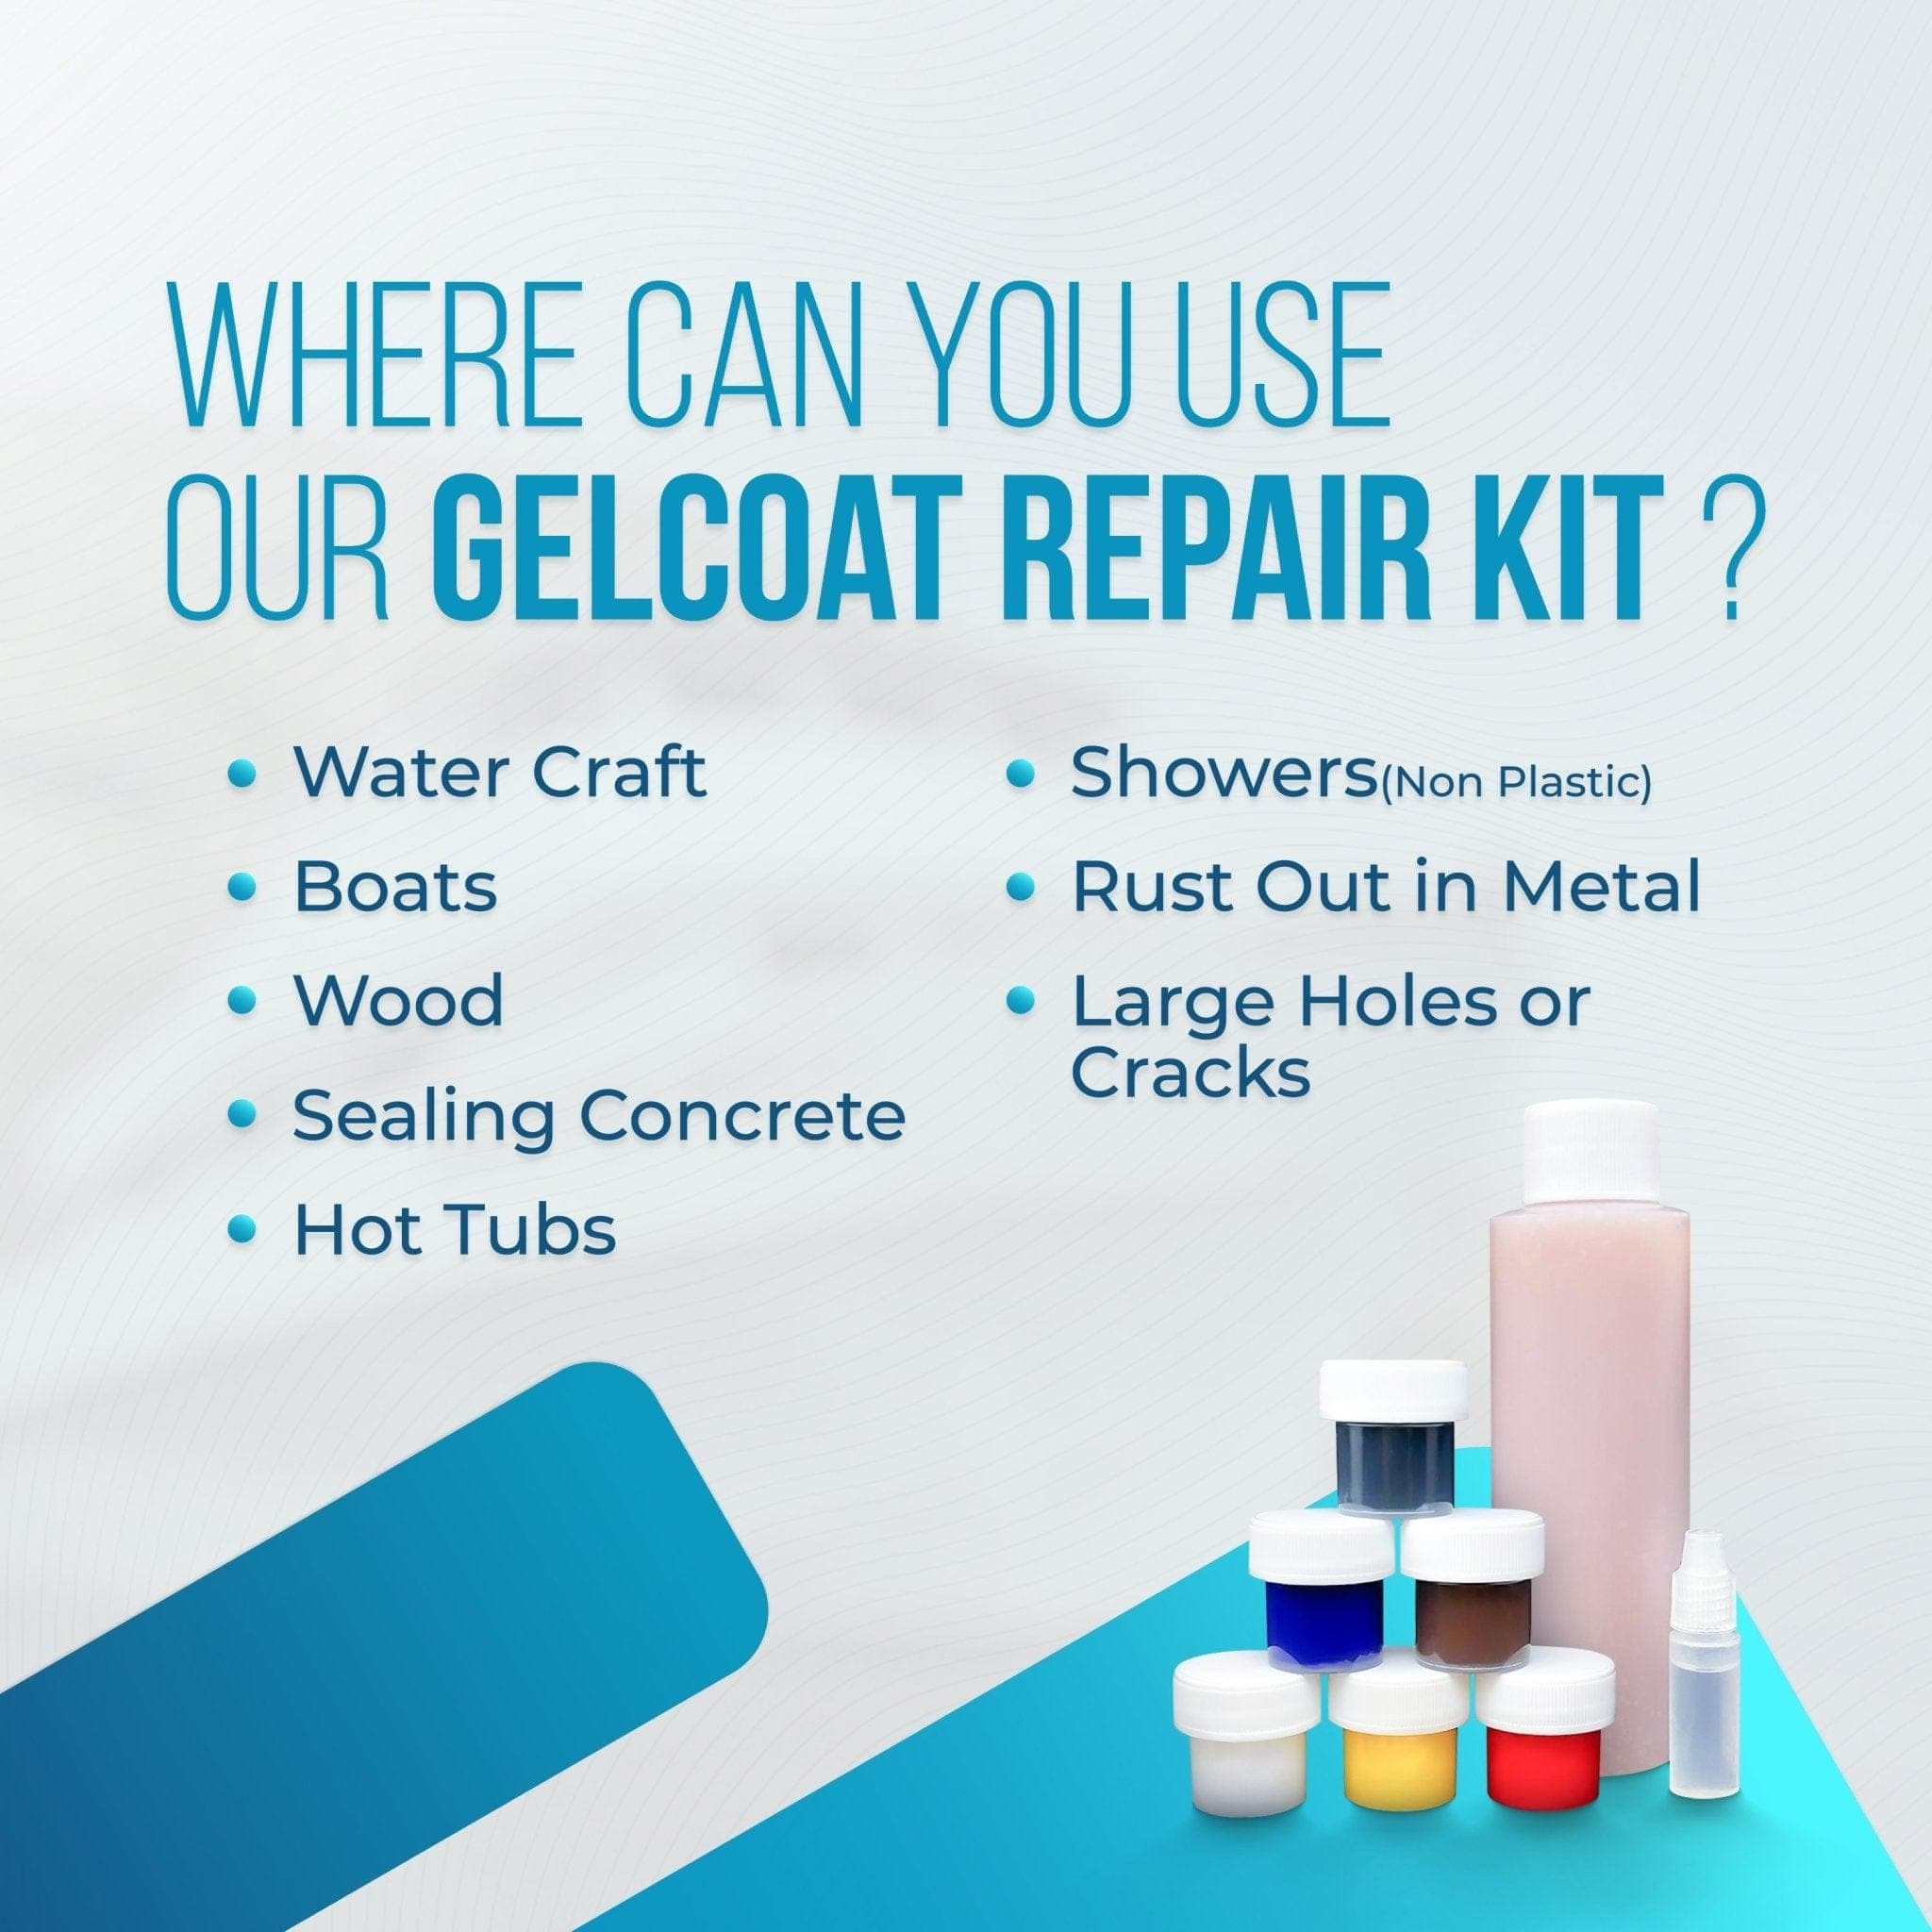 Premium Gelcoat Repair Kit - Complete Set - TRUE COMPOSITES